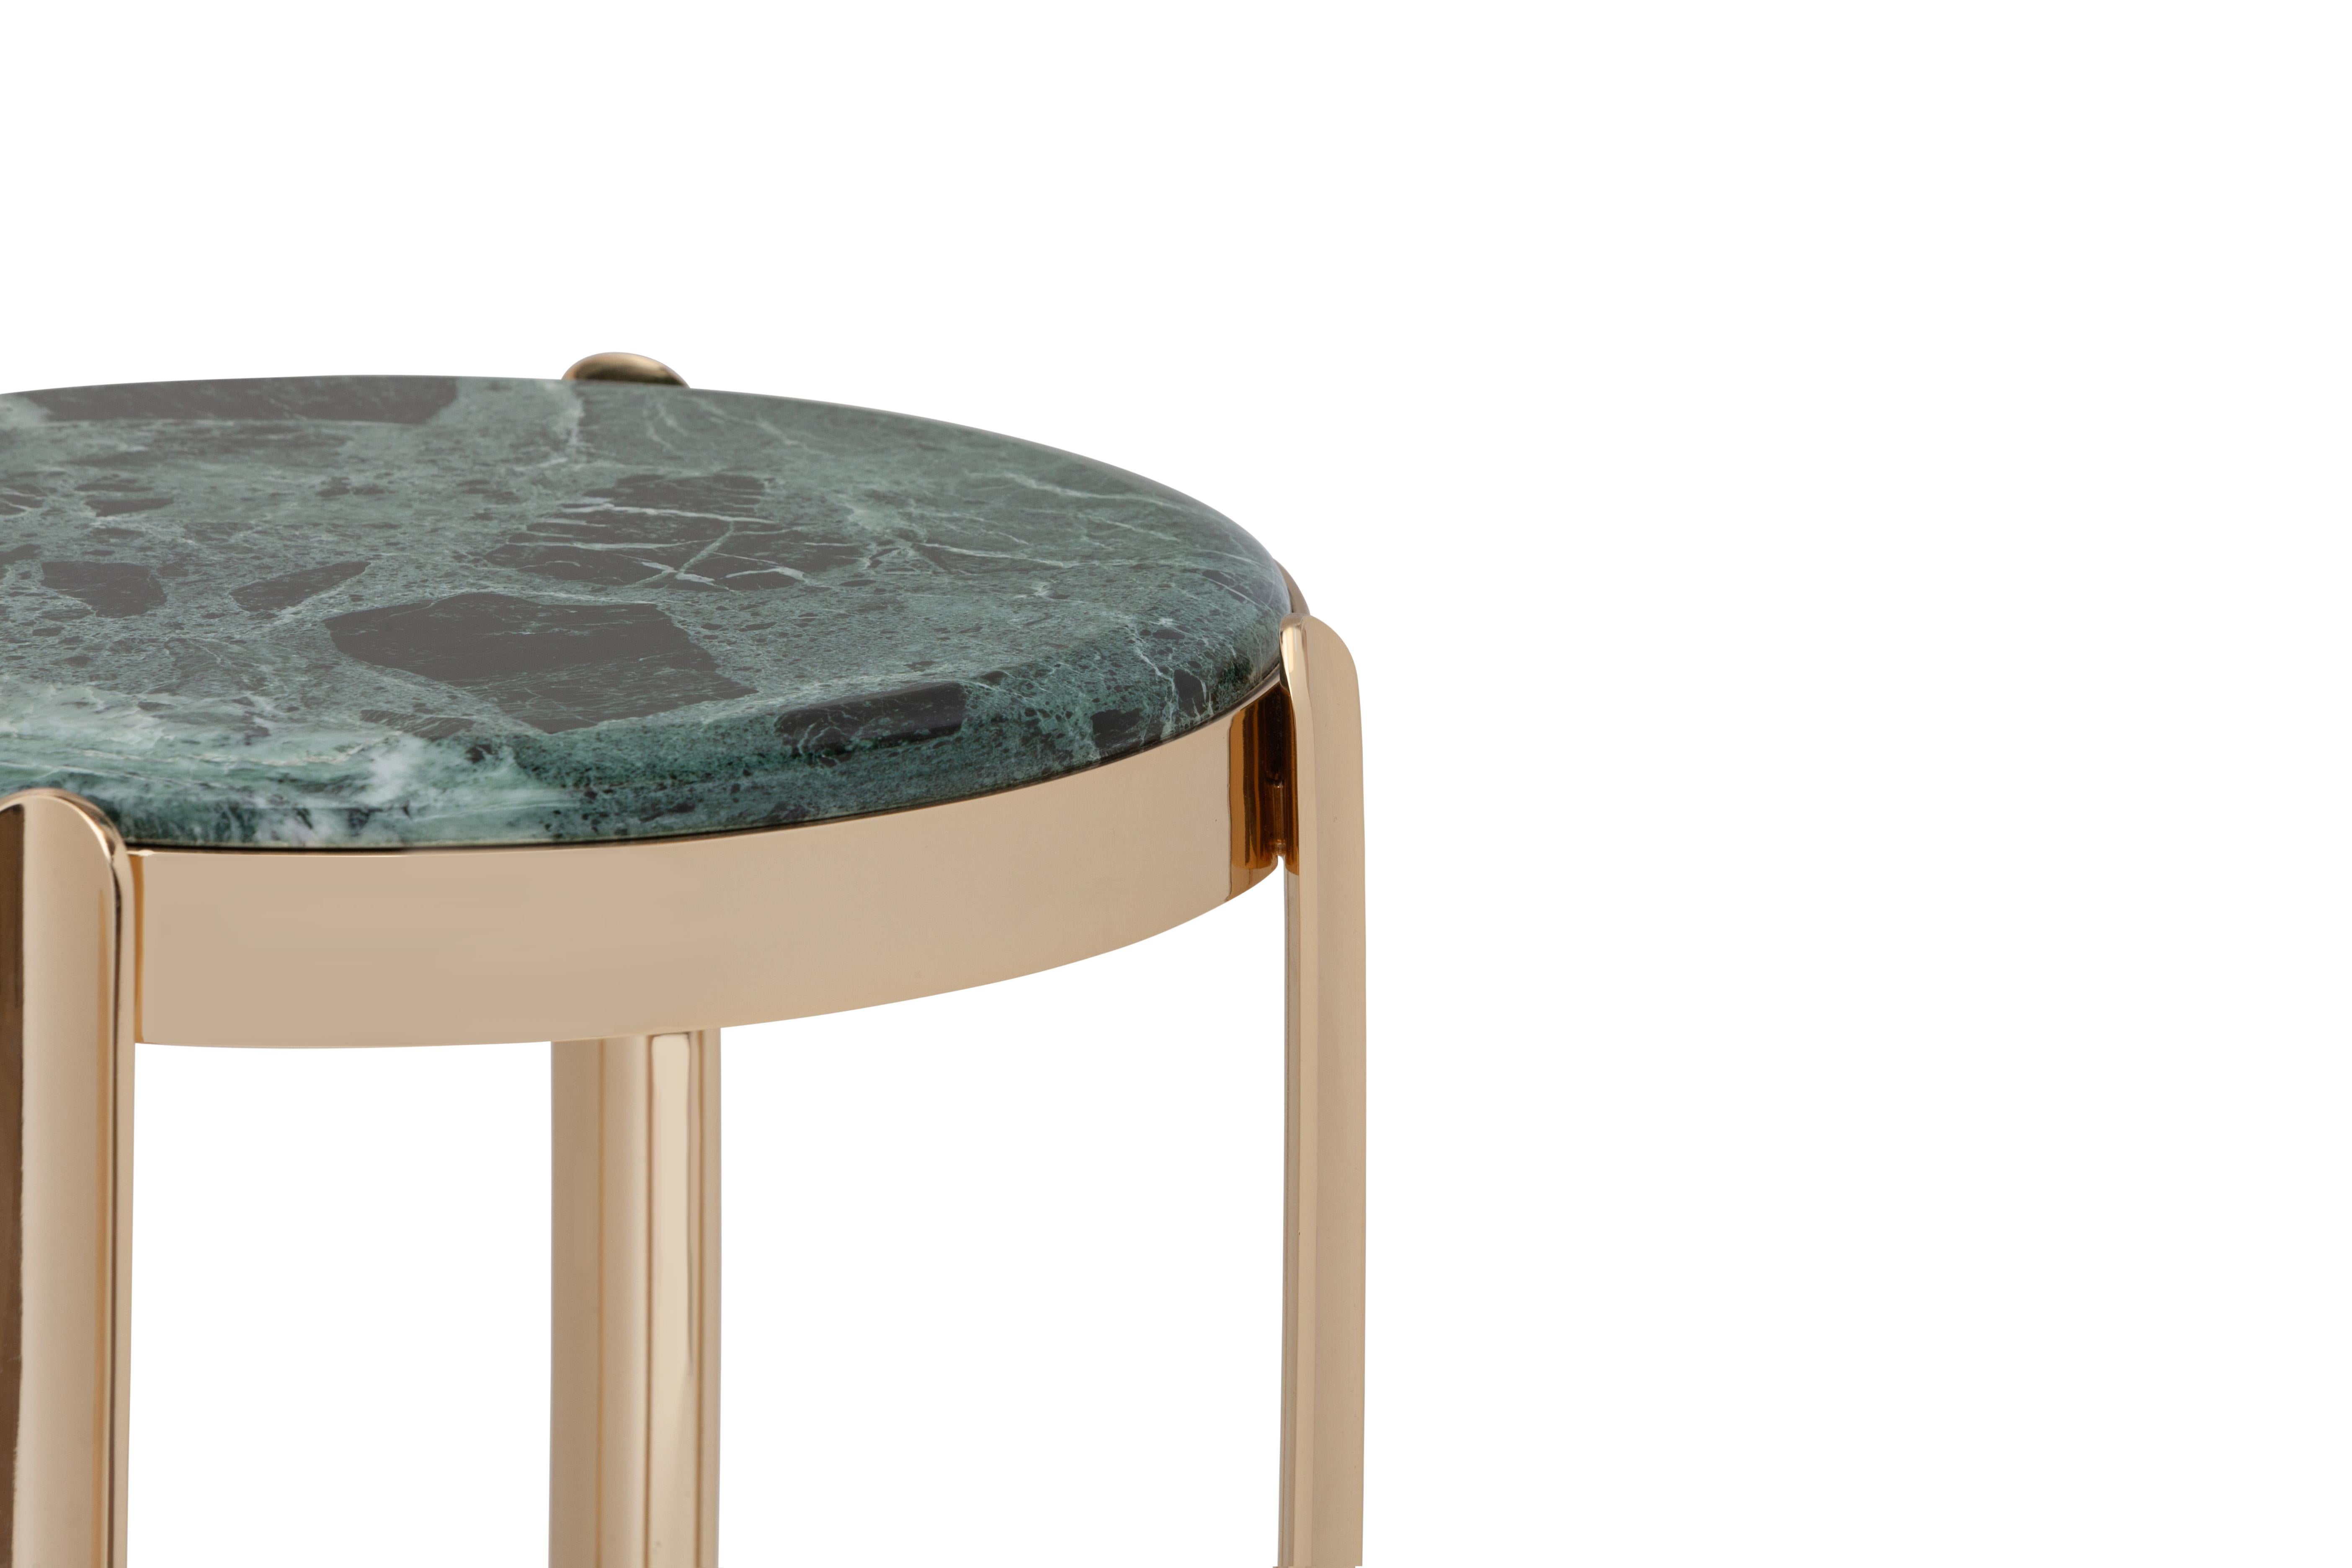 Table d'appoint en laiton vert alpin Elie Saab Maison Art Déco du 21e siècle, Italie

Nommées d'après leur position stratégique dans les intérieurs, les tables basses et consoles Zenith ajoutent un glamour raffiné et contemporain à chaque pièce.